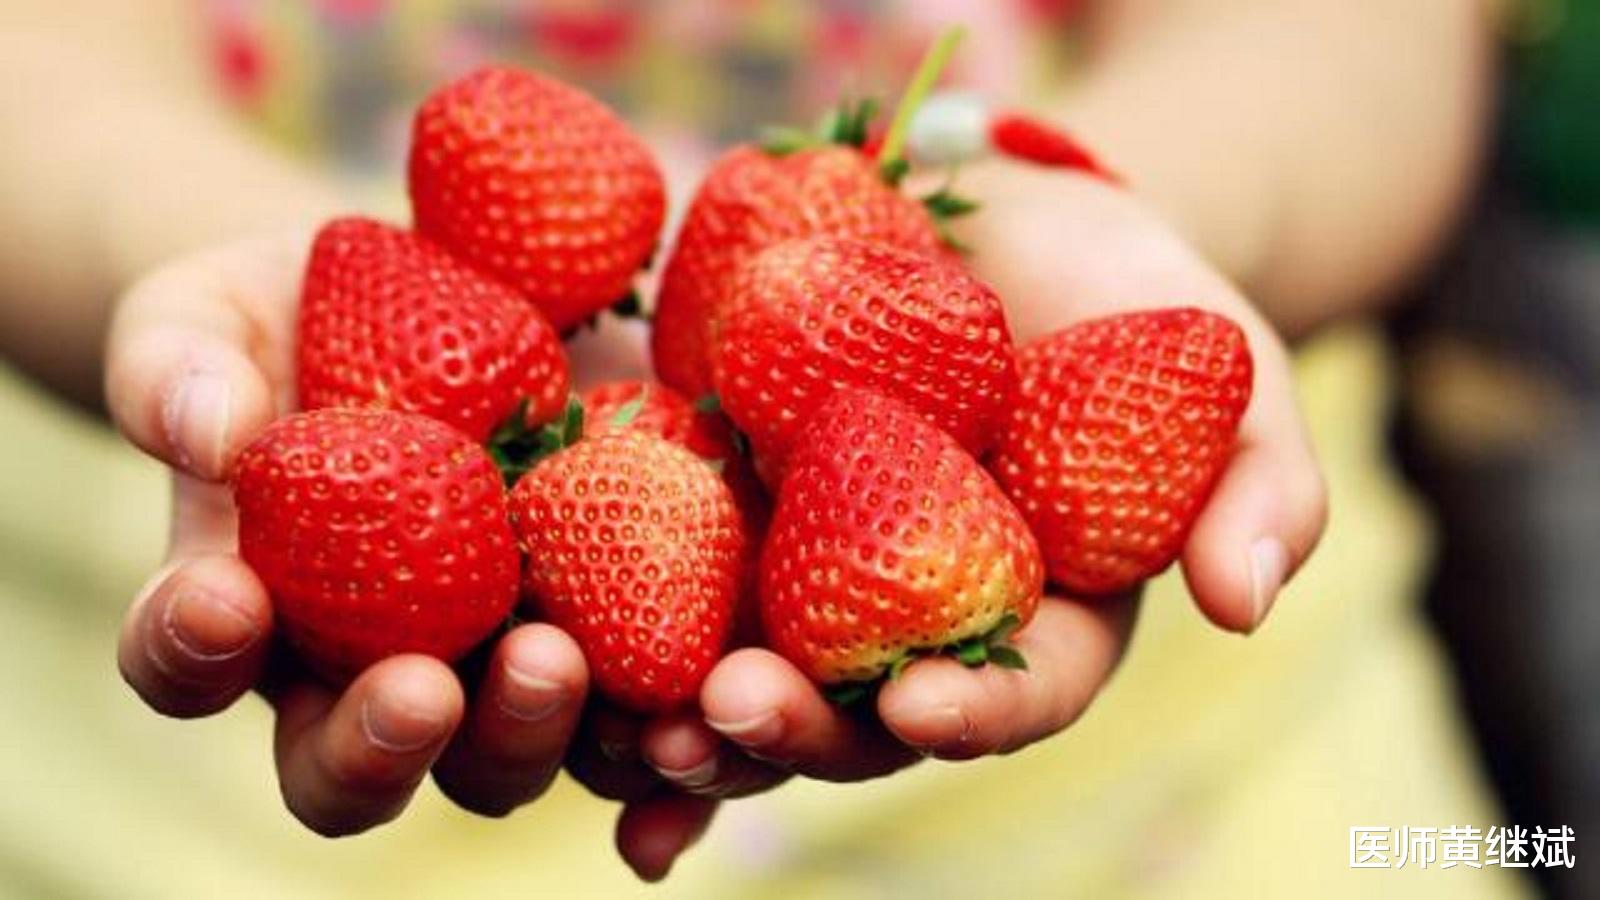 号称美容的必选水果之一，草莓酸甜可口，吃多了有什么坏处呢？